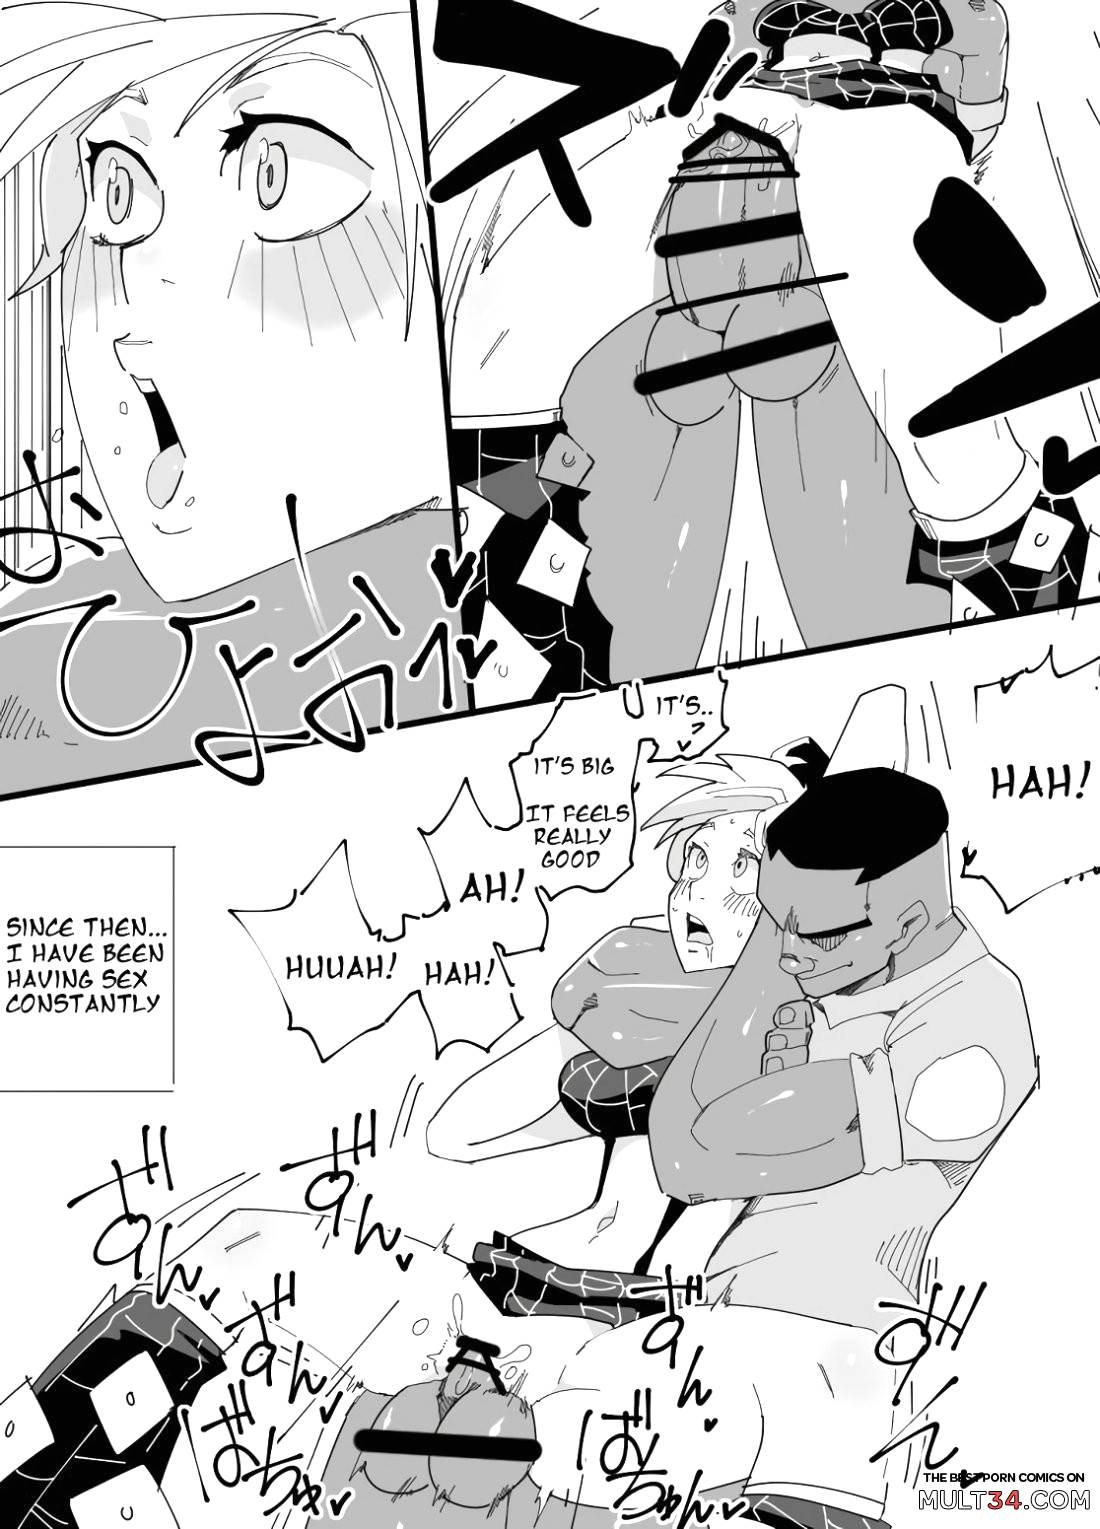 Rakugaki ~Jolyne~ (JoJo's Bizarre Adventure) page 9